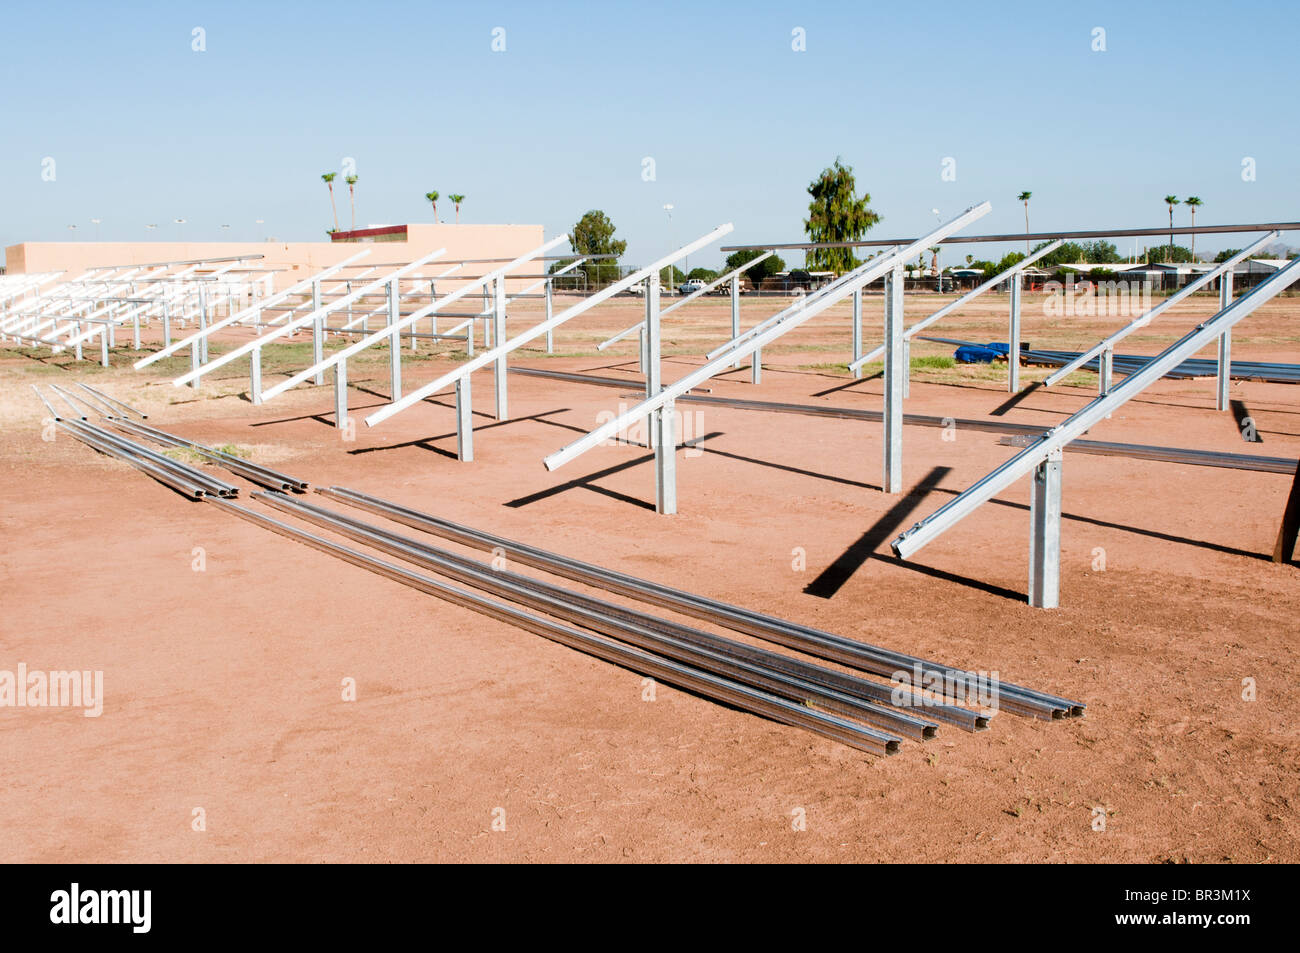 L'aluminium et l'acier poutres structurelles sont utilisés pour construire le cadre d'un projet solaire dans une école primaire, à l'Arizona. Banque D'Images